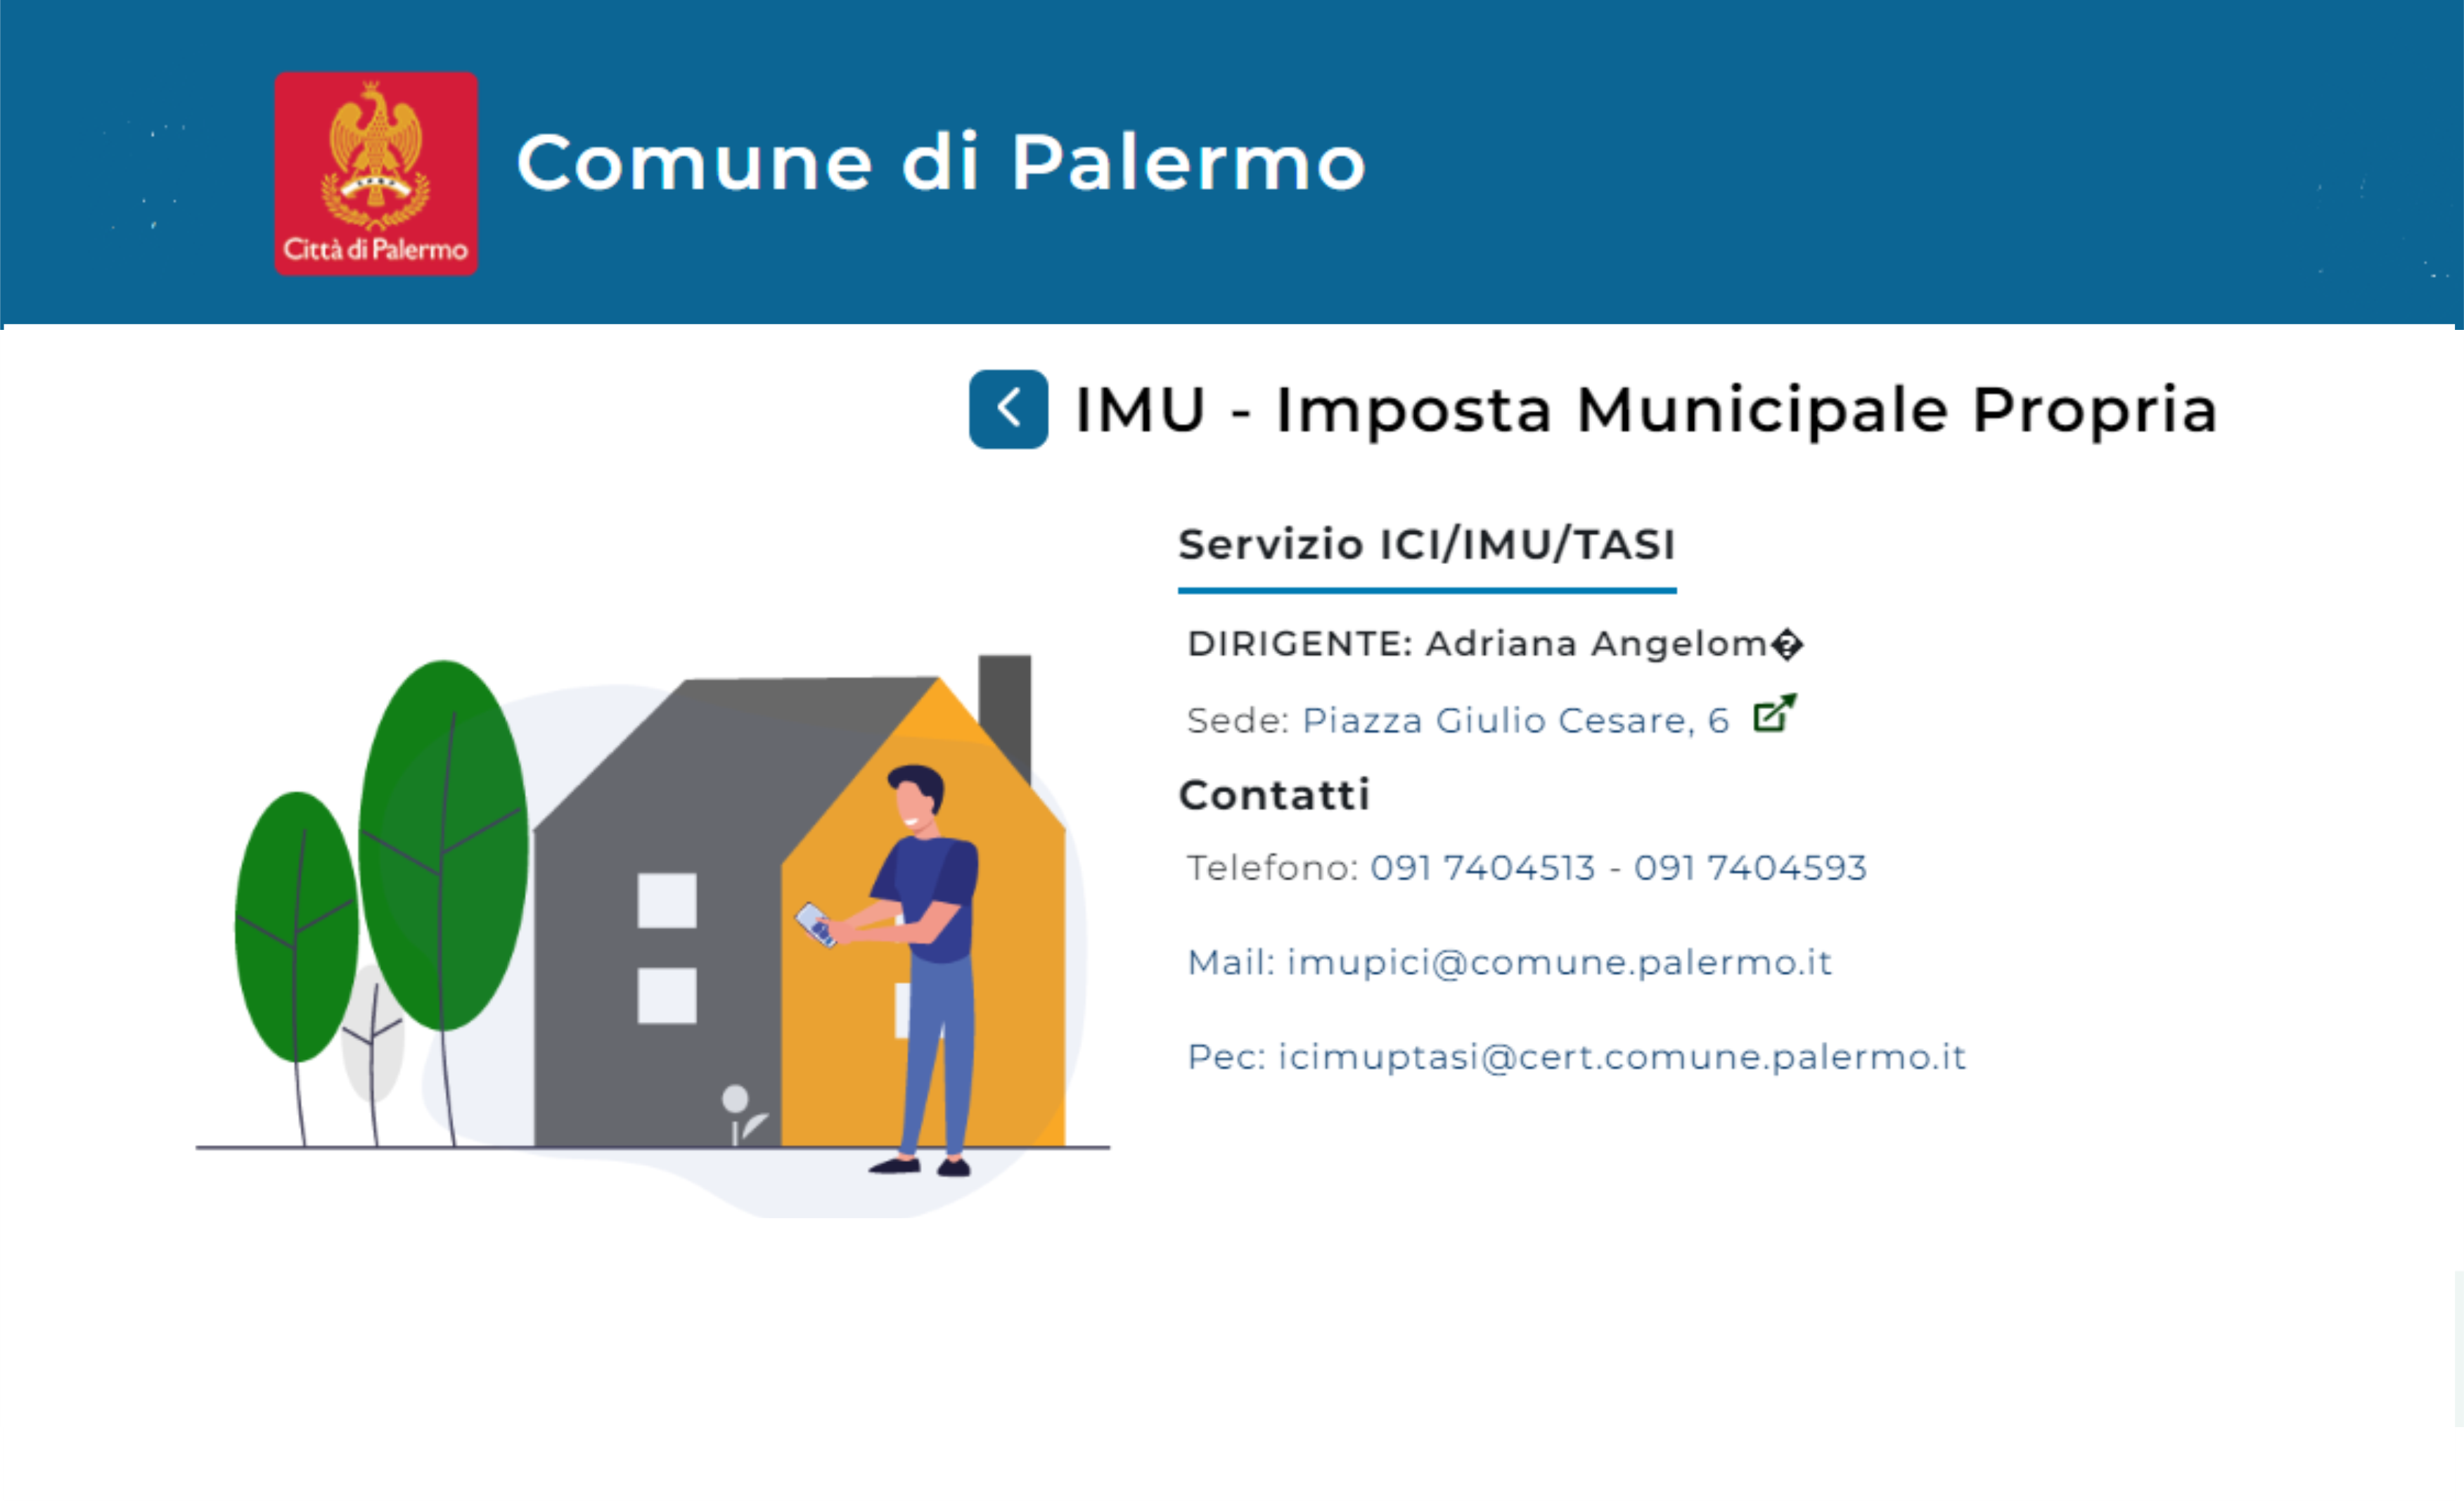 Ufficio Tributi Palermo: dopo anni di disattenzione politica potenziati alcuni servizi